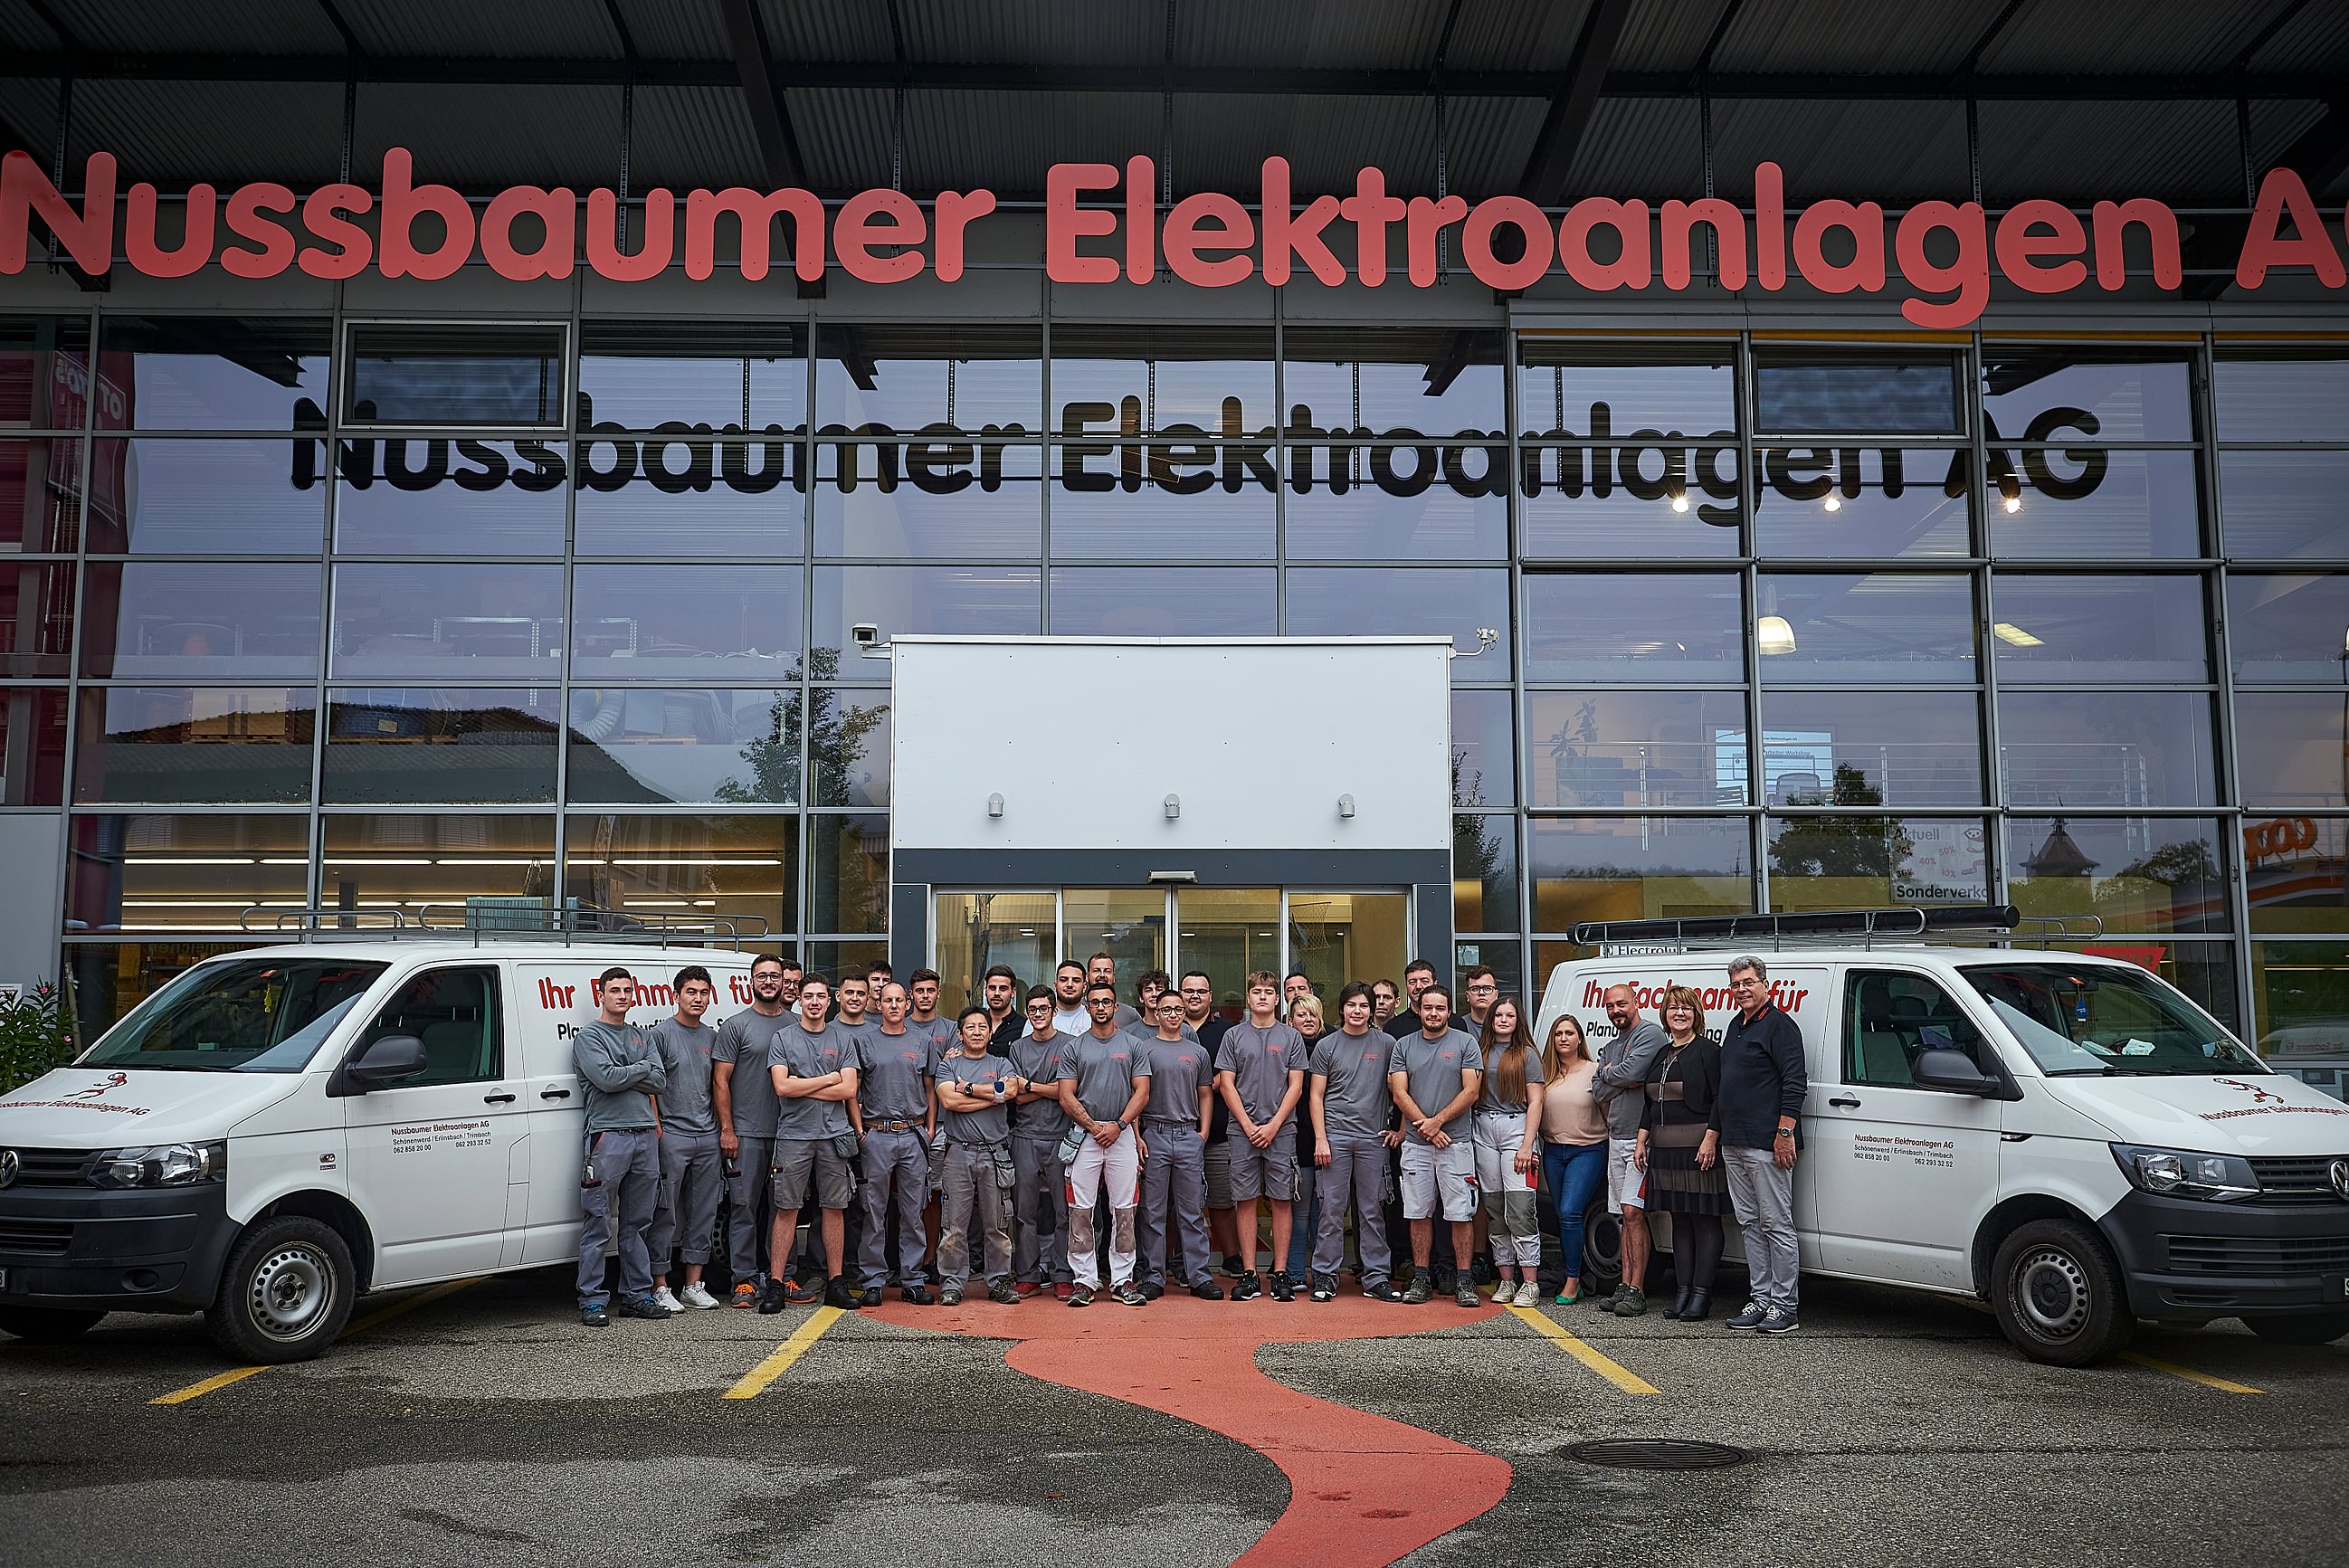 Bilder Nussbaumer Elektroanlagen AG